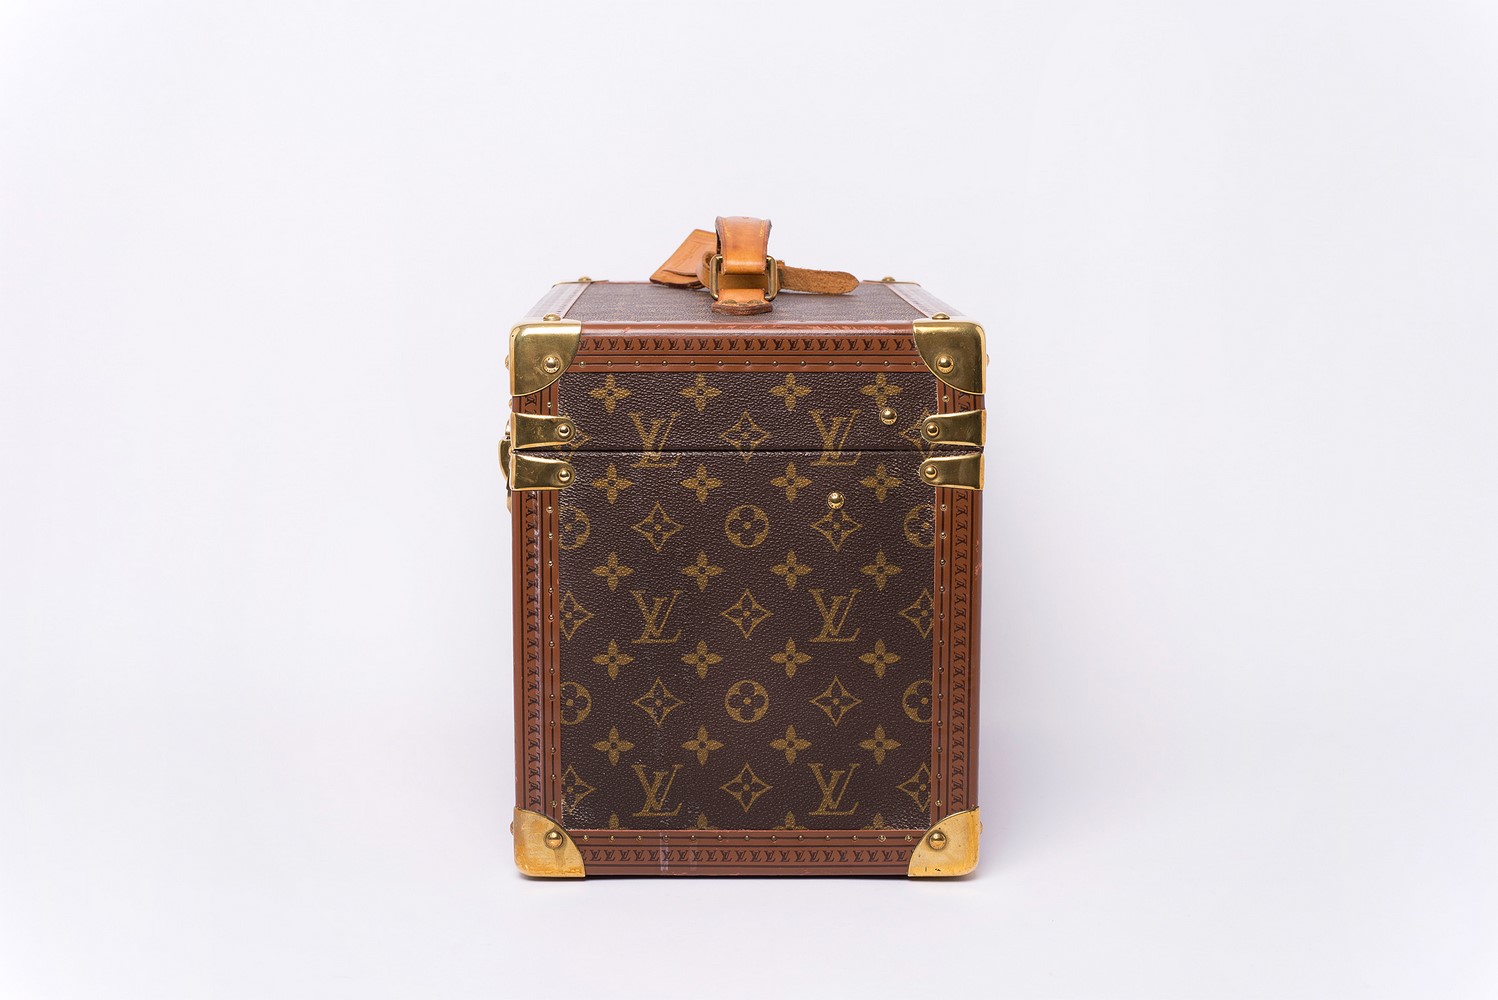 Vanity (Boîte à flacons) Louis Vuitton Vintage Authentique grand modèle en toile monogram brun